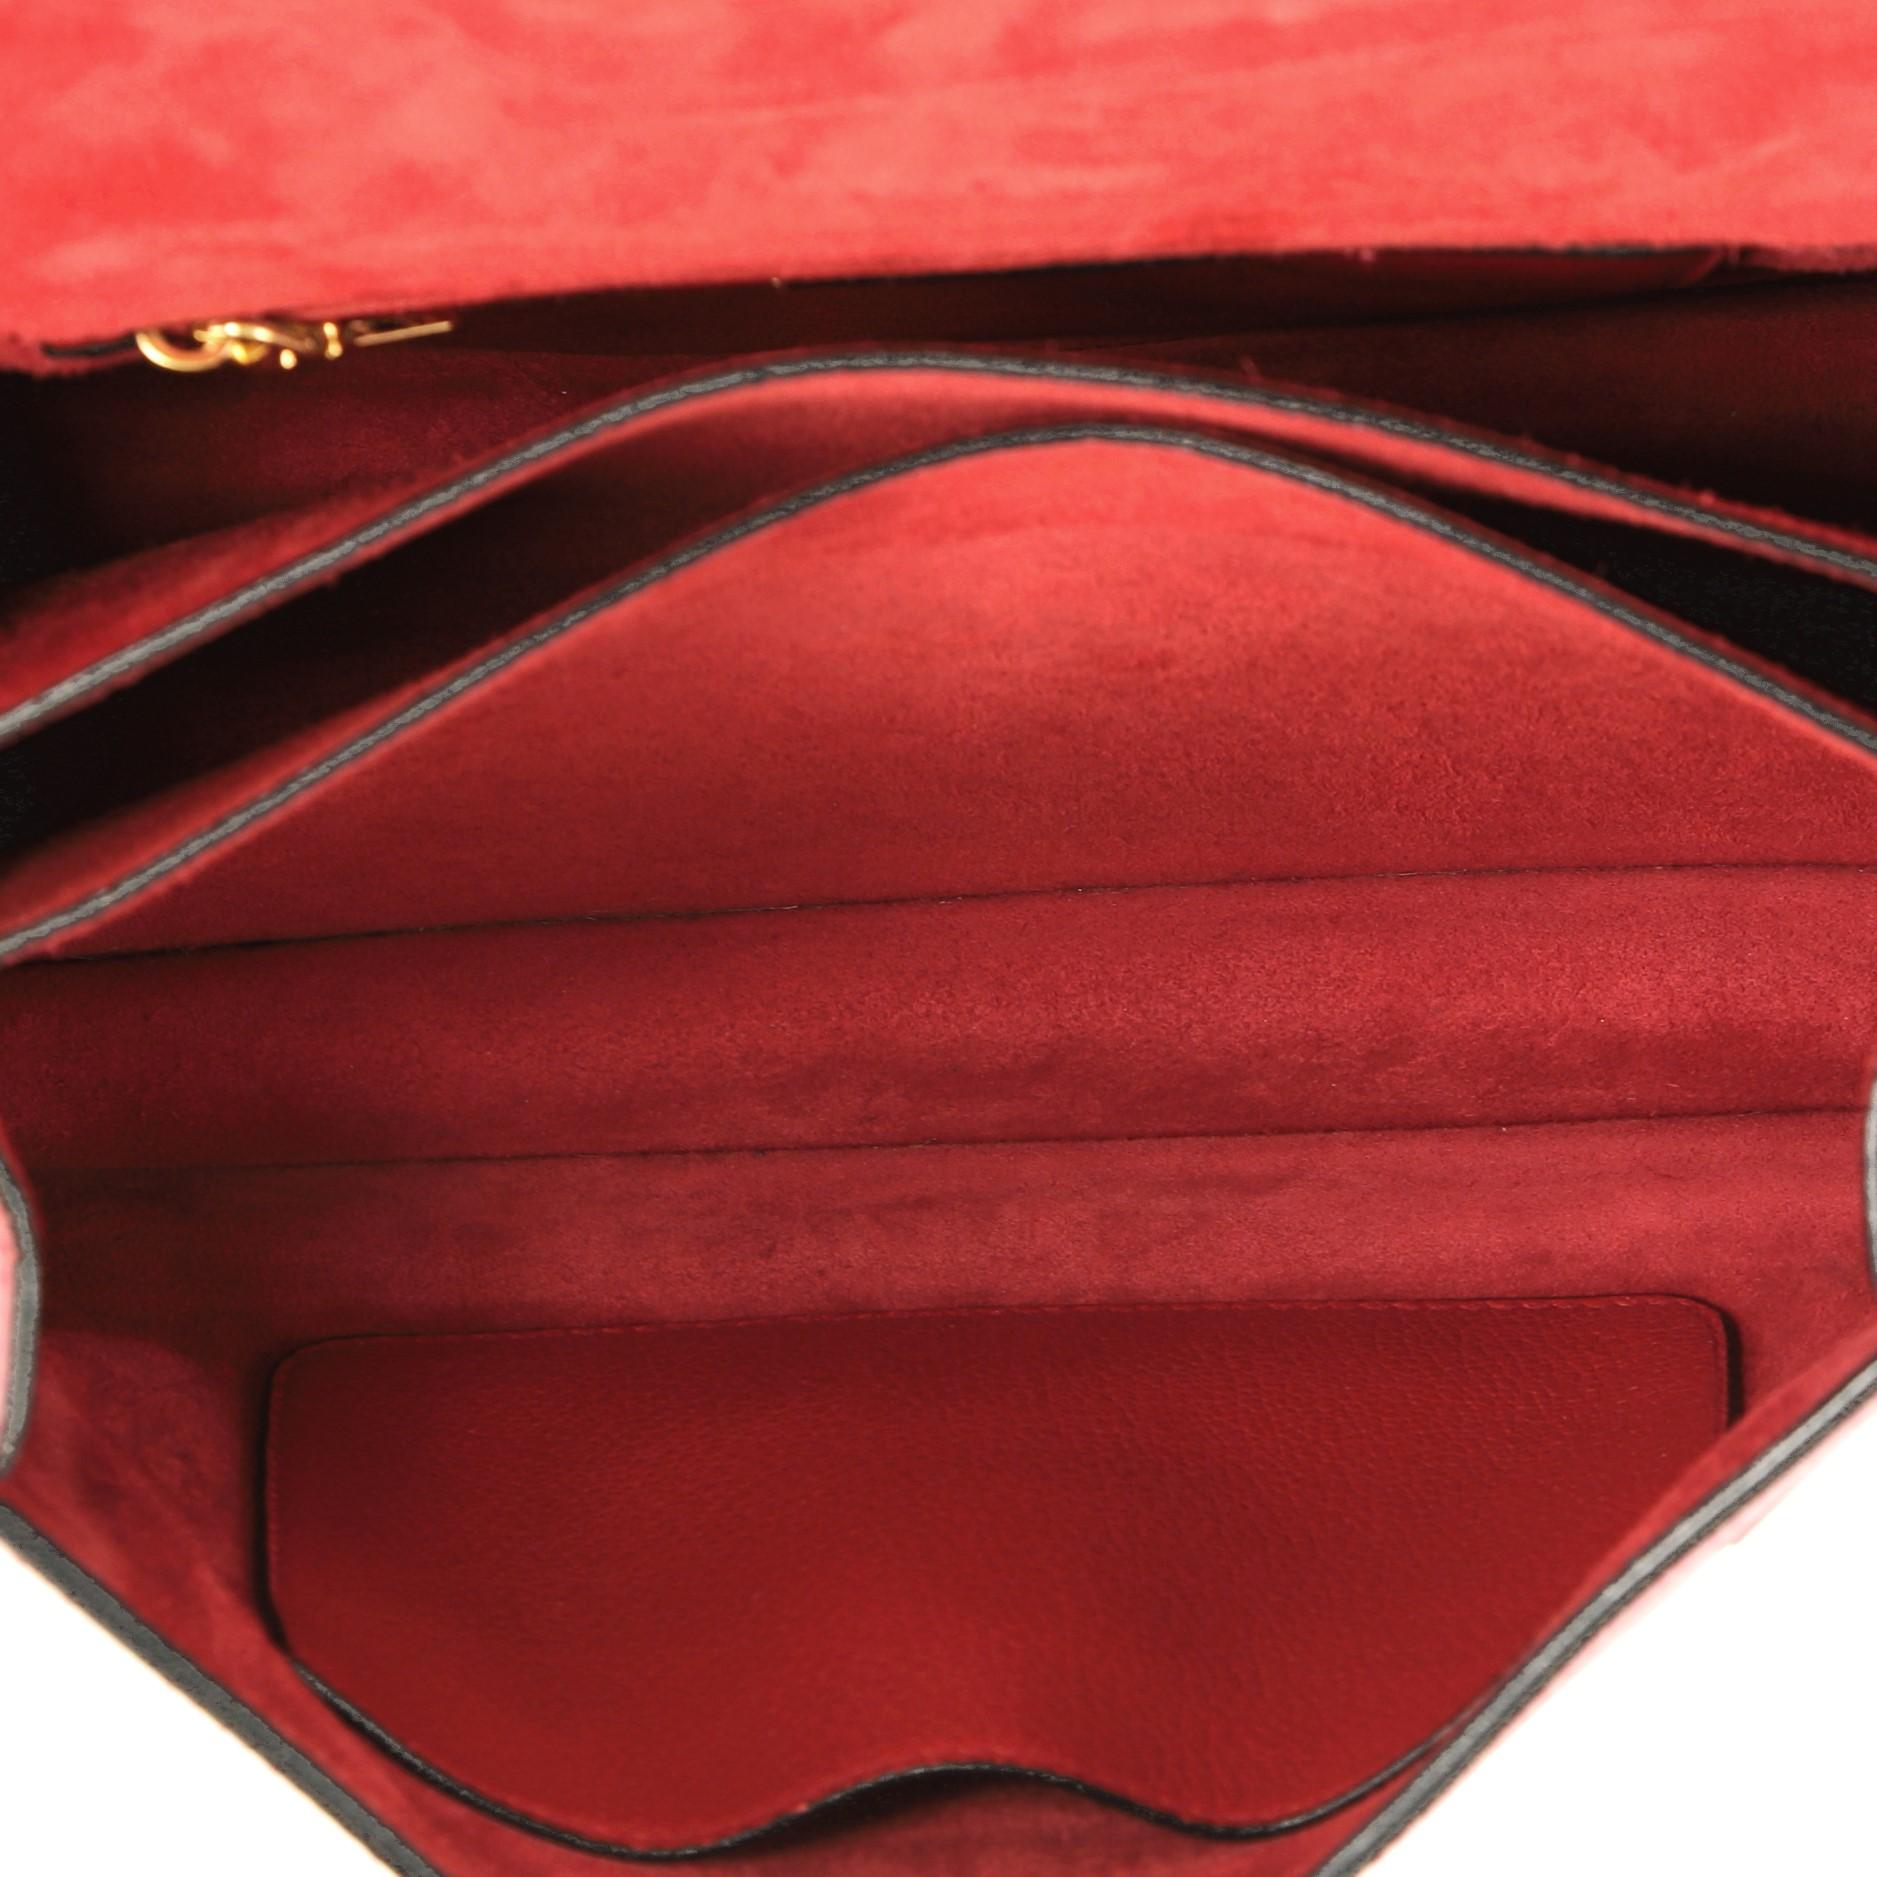 Miu Miu Bicolor Madras Convertible Compartment Top Handle Bag Leather Medium 1